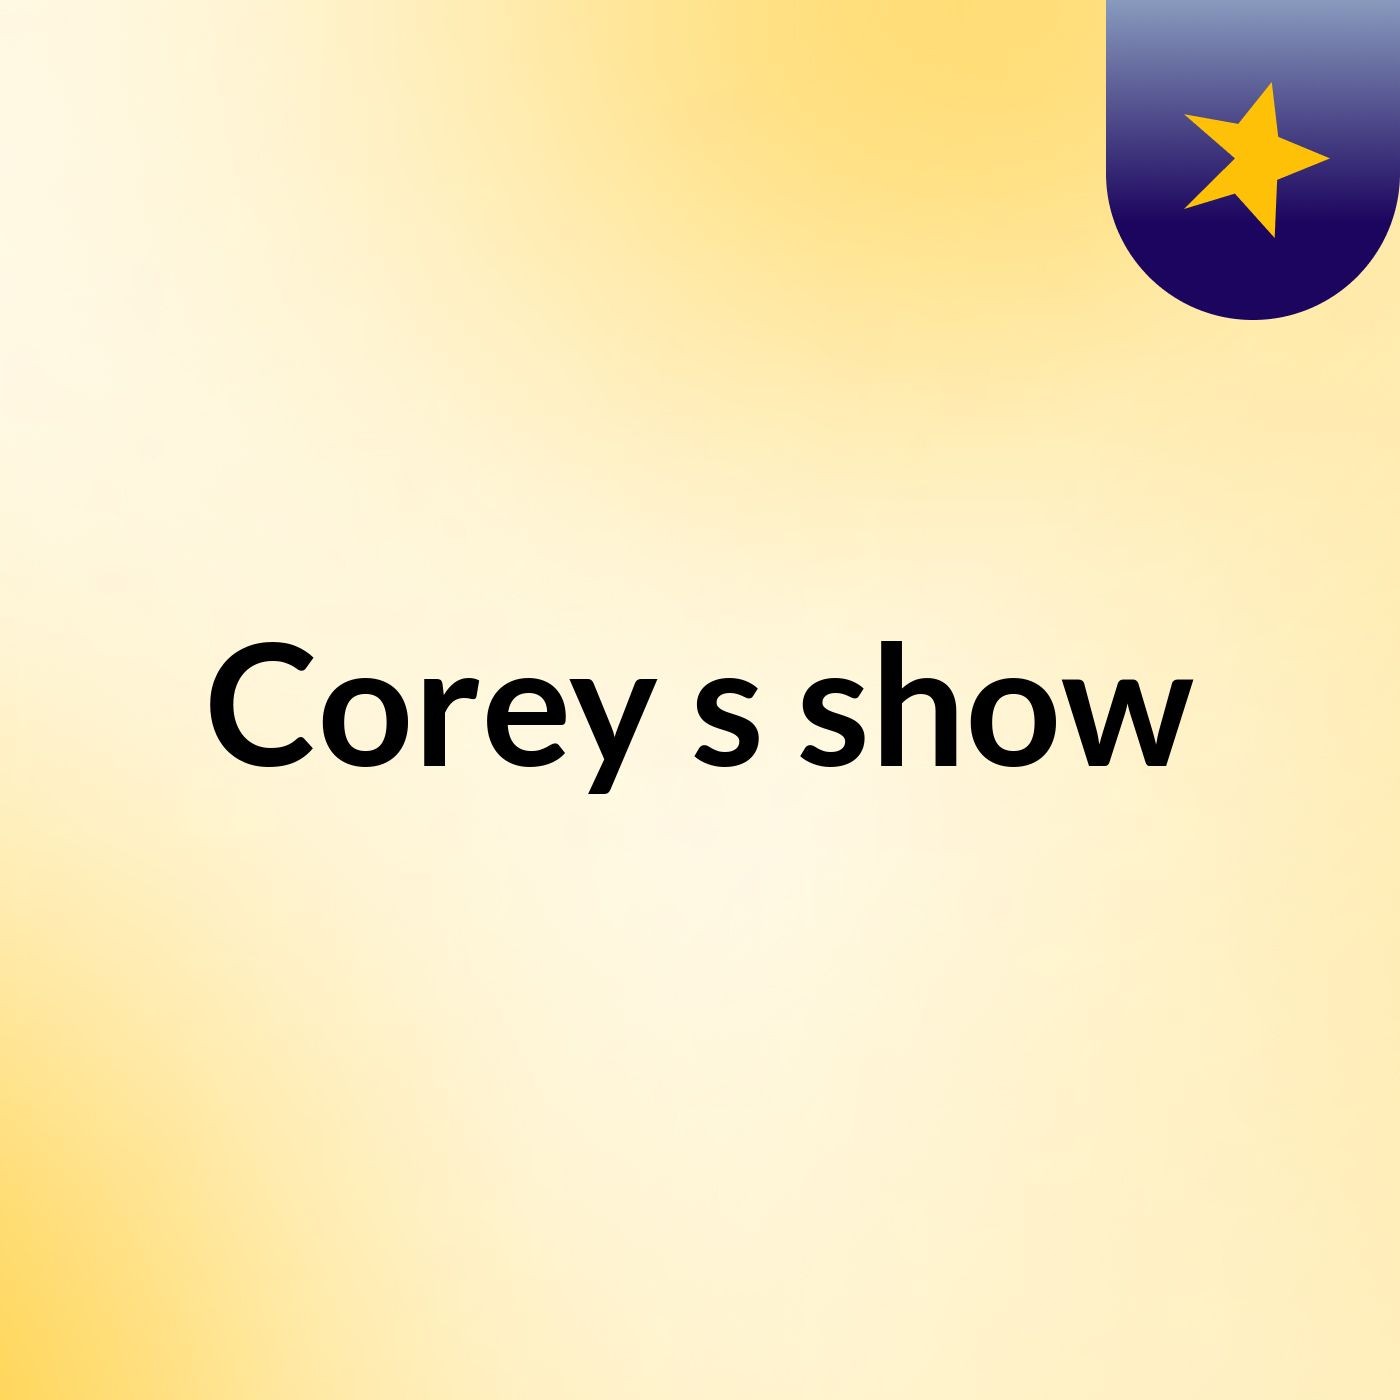 Corey's show